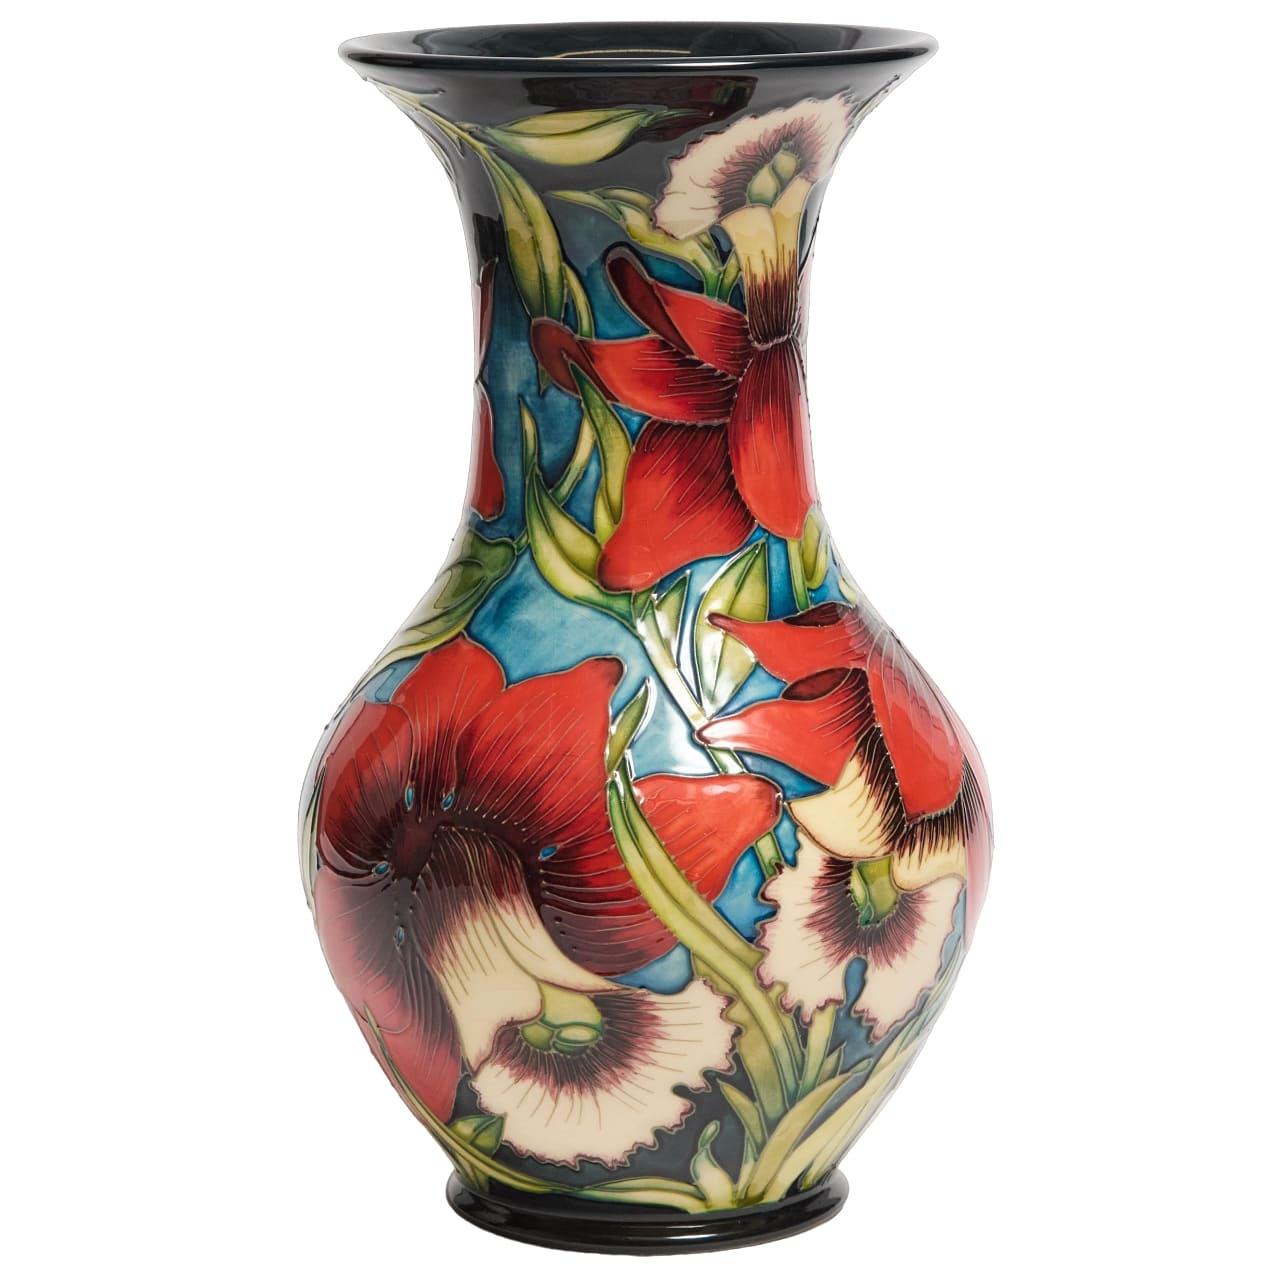 Schöne Vase, entworfen von Shirley Hayes, exquisites Design
Limitierte Auflage 18/50 von 2002
Höhe 13 Zoll
eingeprägte und aufgemalte Spuren auf der Unterseite

Kleine Glasurrisse sind unbedeutend; ansonsten guter Zustand